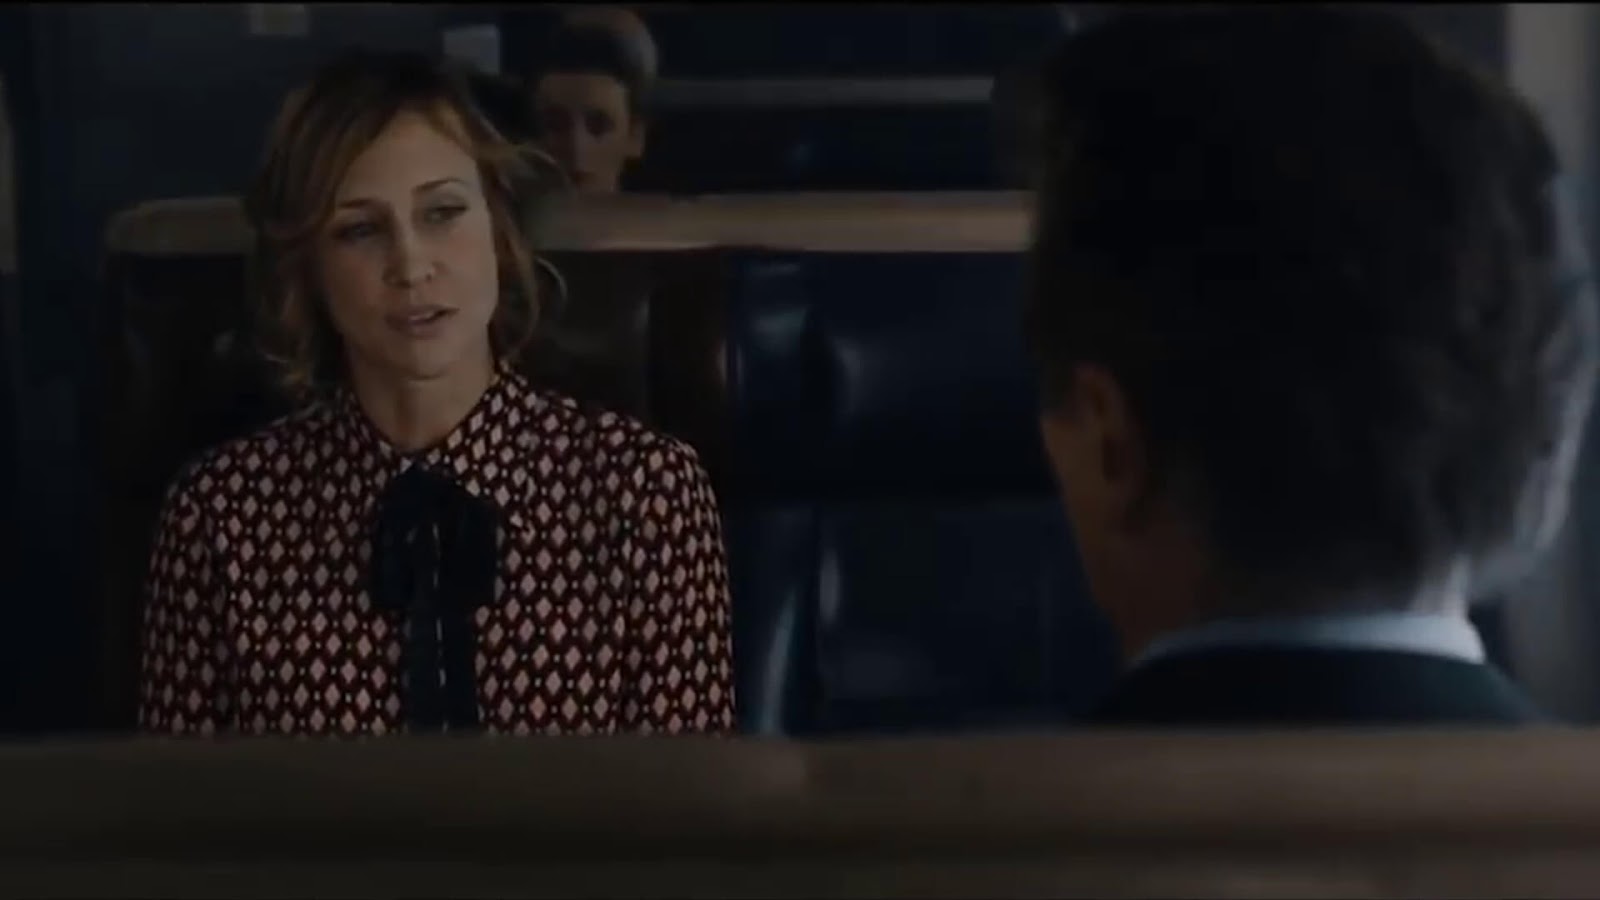 Vera Farmiga and Liam Neeson in The Commuter